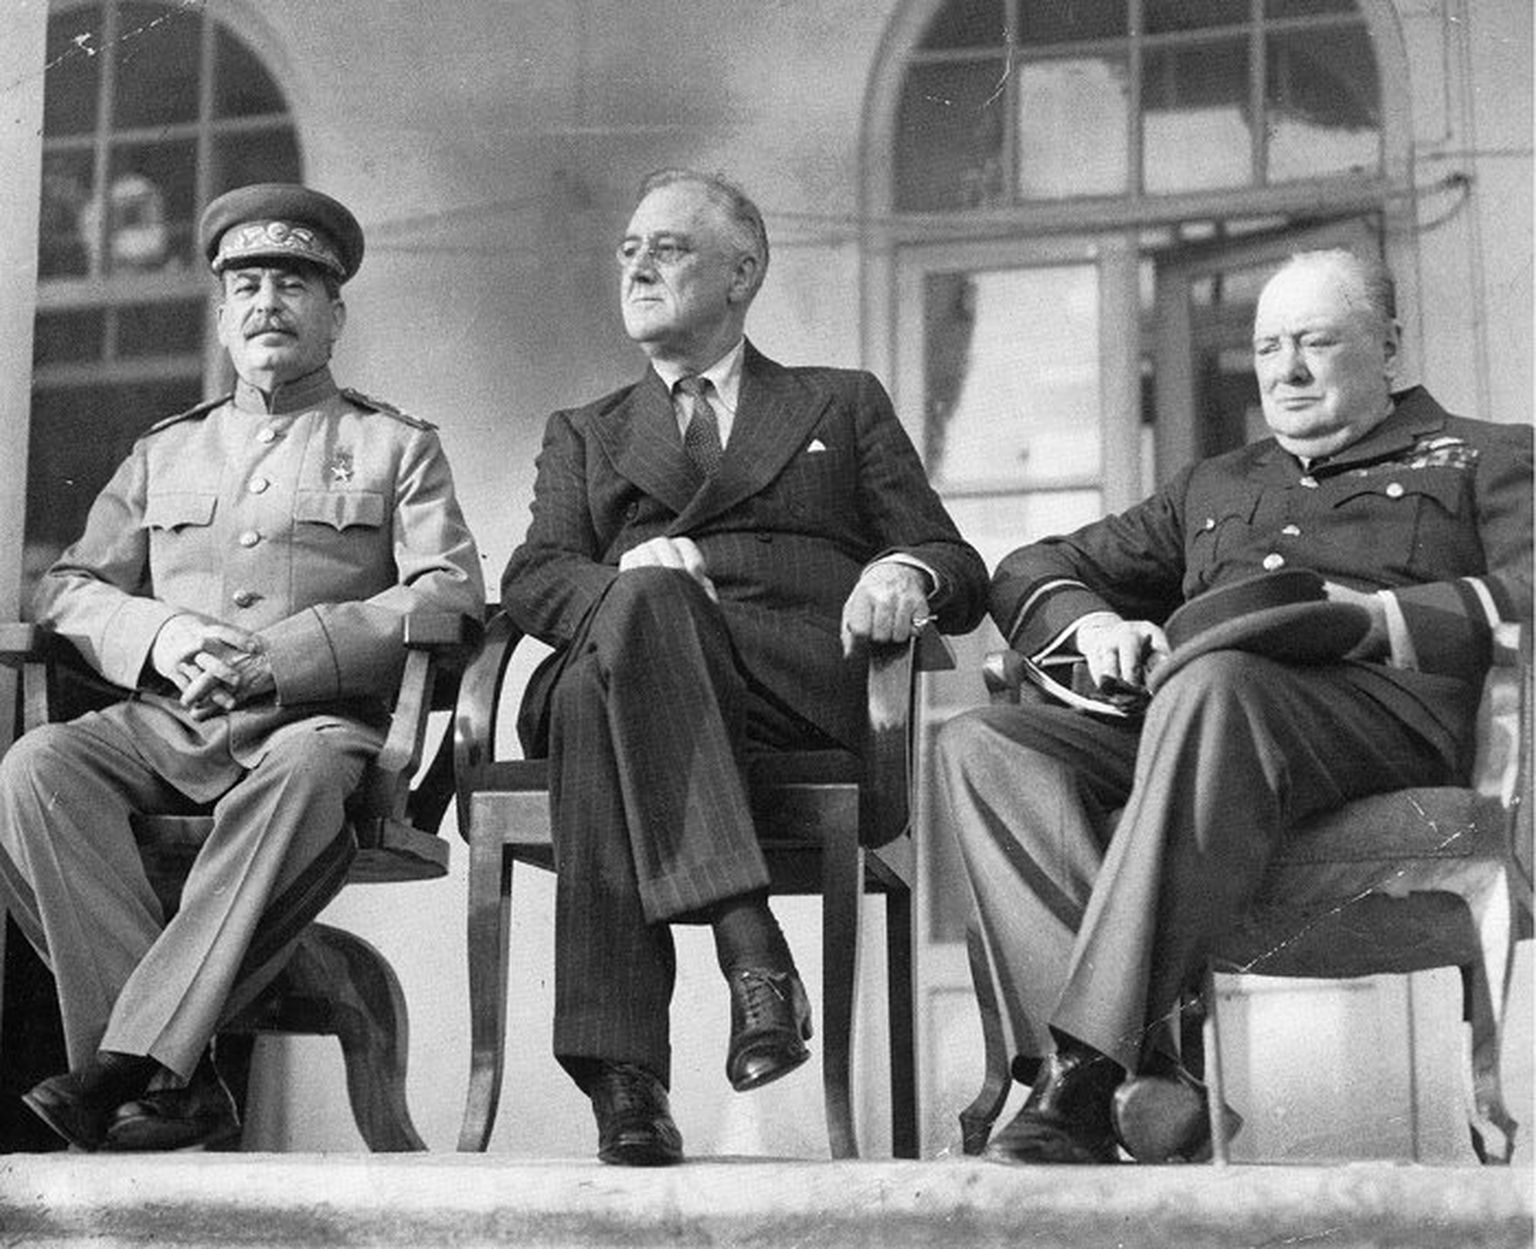 Tippkohtumine 1943. aasta lõpus Teheranis oli esimene, millest võttis osa ka Nõukogude Liidu riigijuht Jossif Stalin (vasakul). USA president Franklin D. Roosevelt (keskel) nägi selles võimalust seada sisse eriti usalduslikud suhted kahe riigi vahel. Enne Teherani reisimist keeldus ta kohtumisest Suurbritannia peaministri Winston Churchilliga, kes tahtis kooskõlastada USA ja Briti läbirääkimispositsioone.